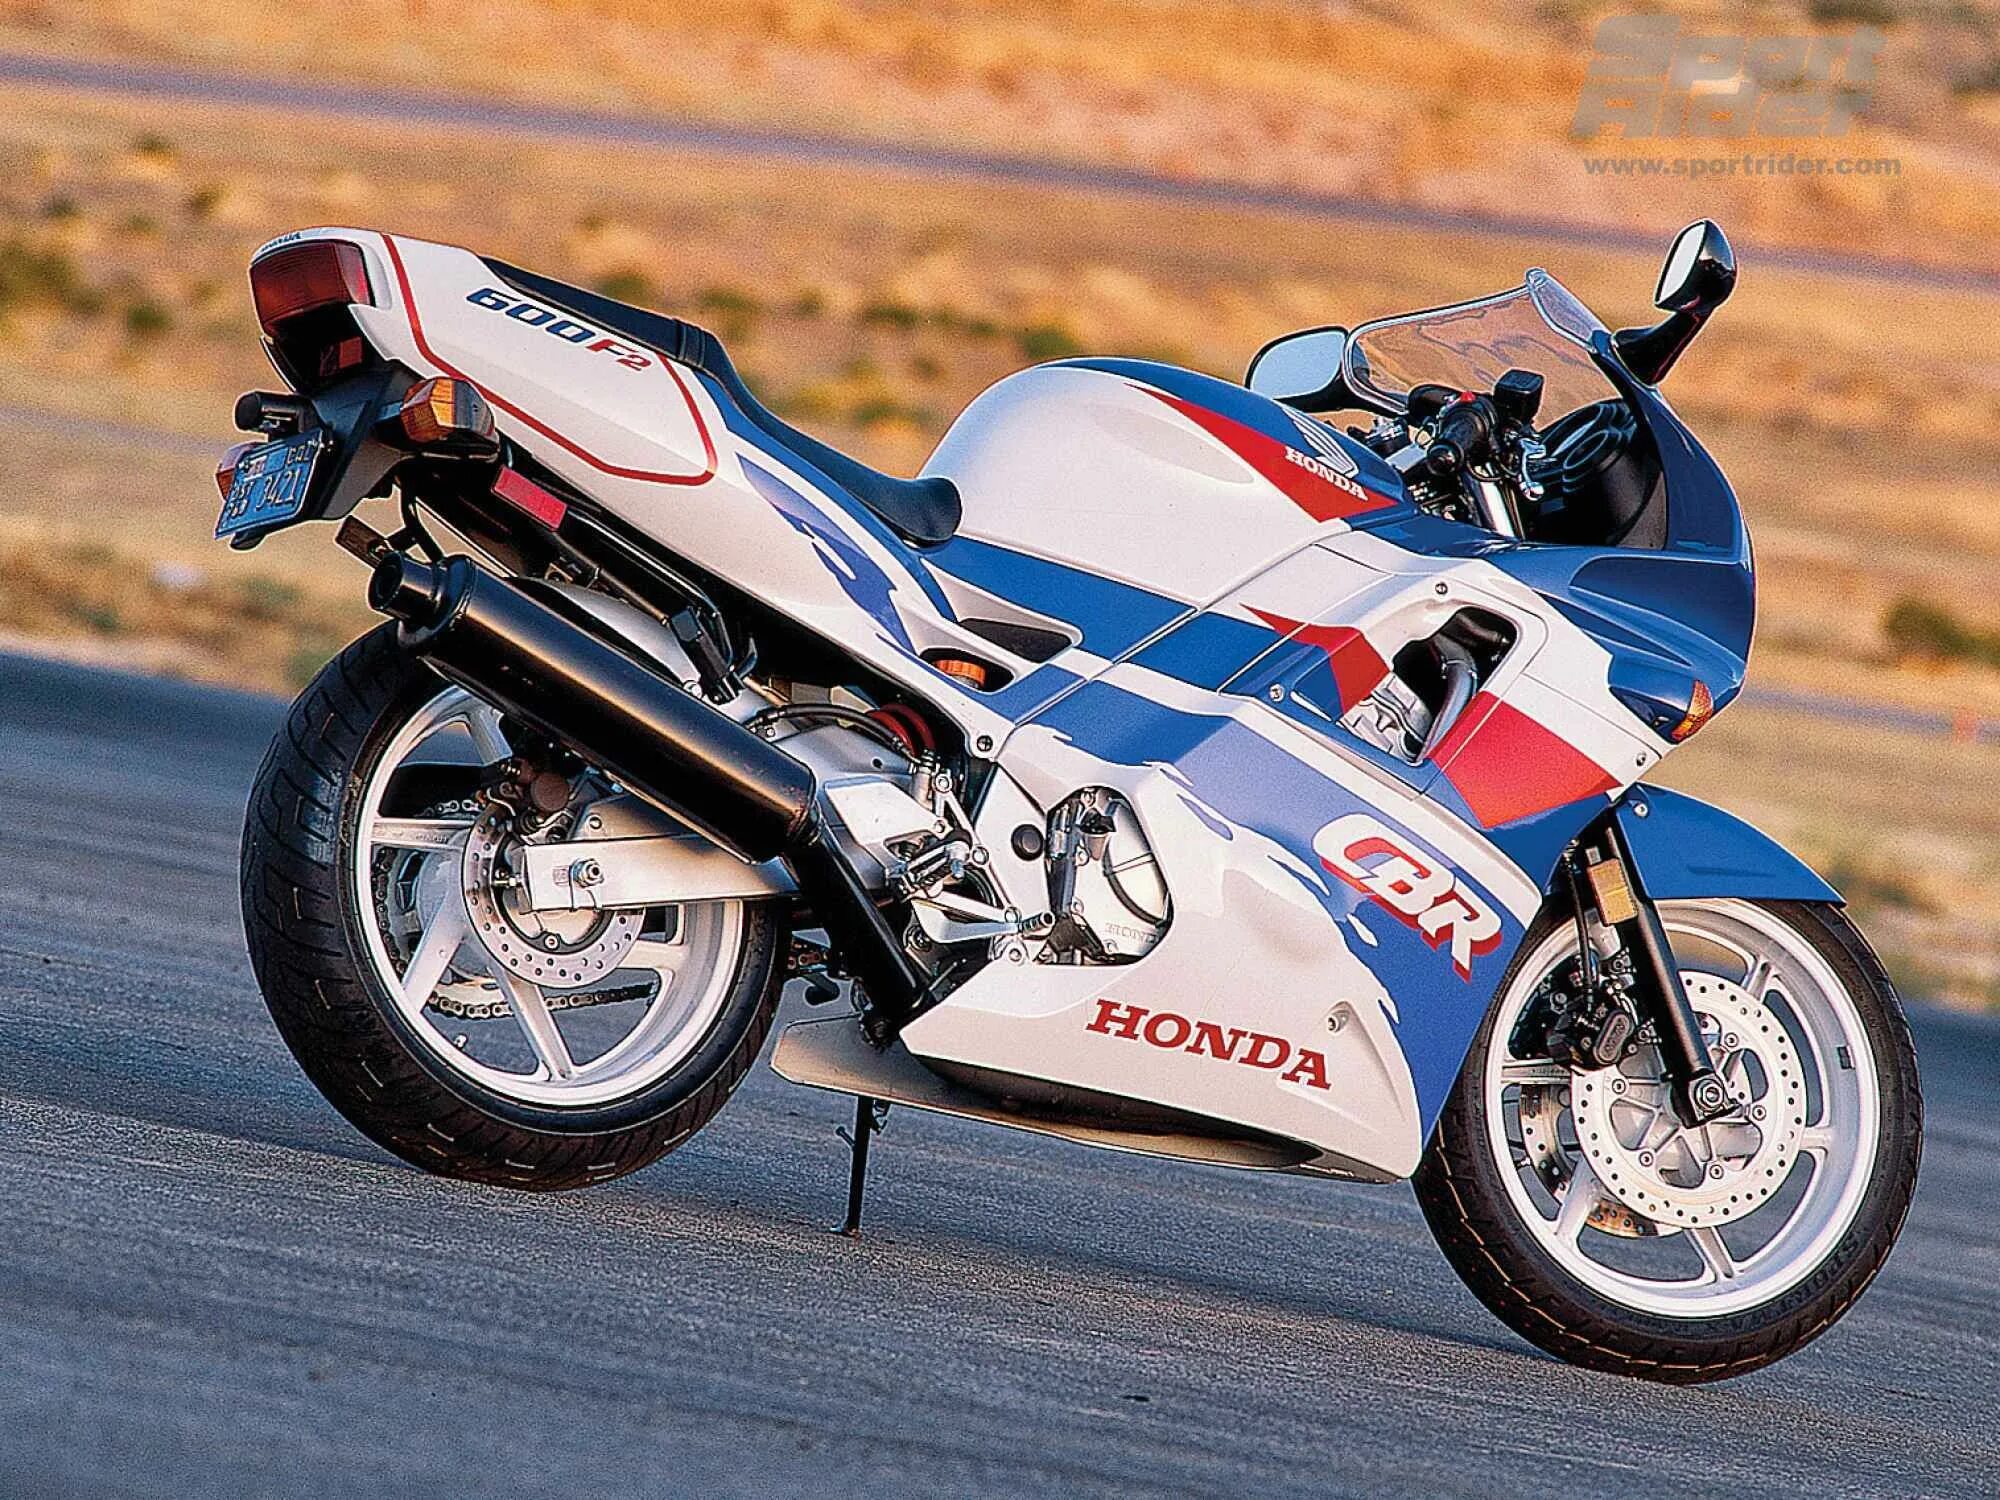 Honda CBR 600 f2. Хонда СБР 600 ф2. Honda CBR f2. Honda CBR 600 f2 1994. Honda pgm